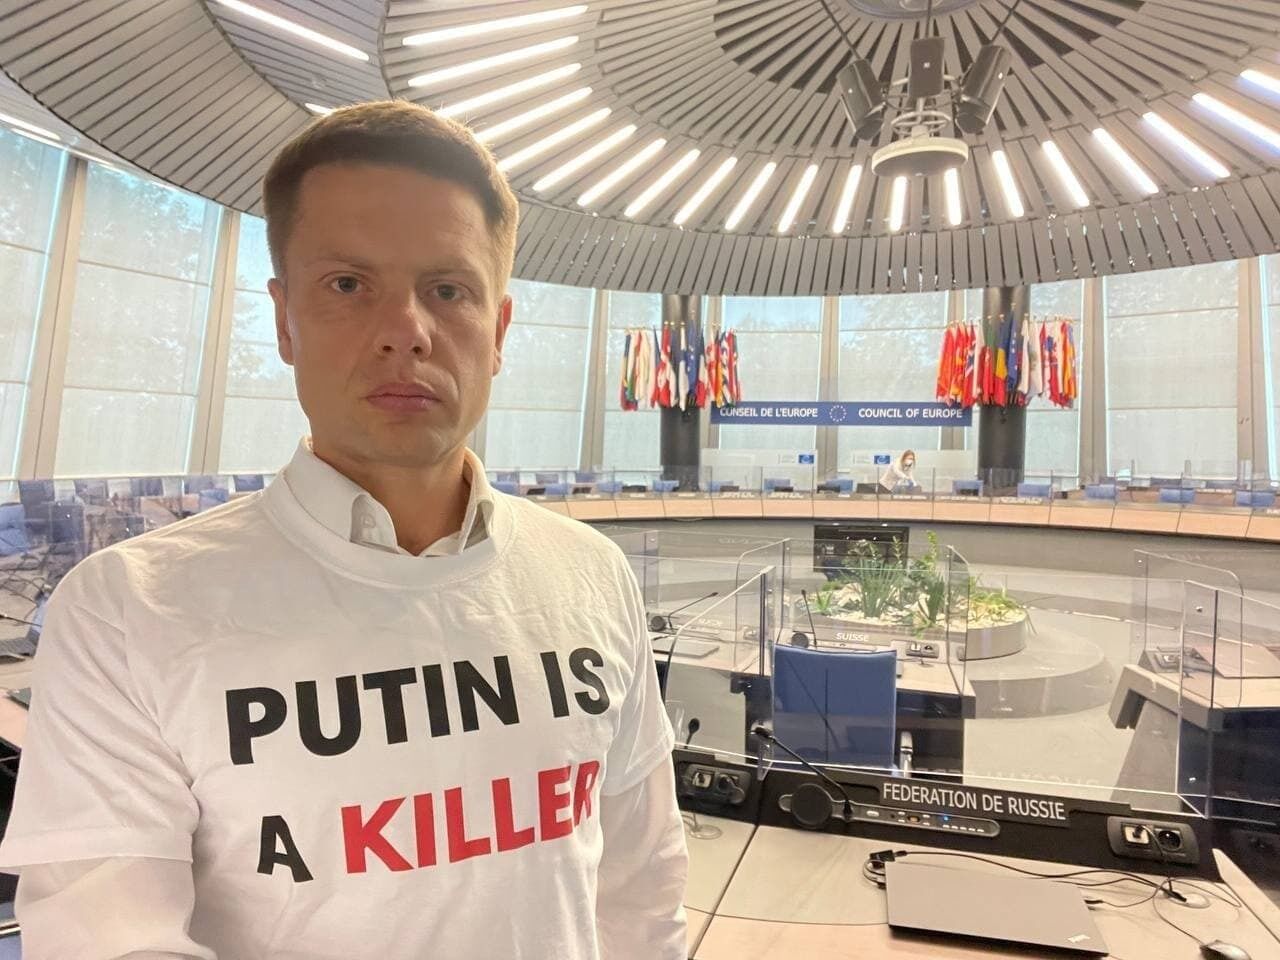 Гончаренко в футболке "Путин убийца".